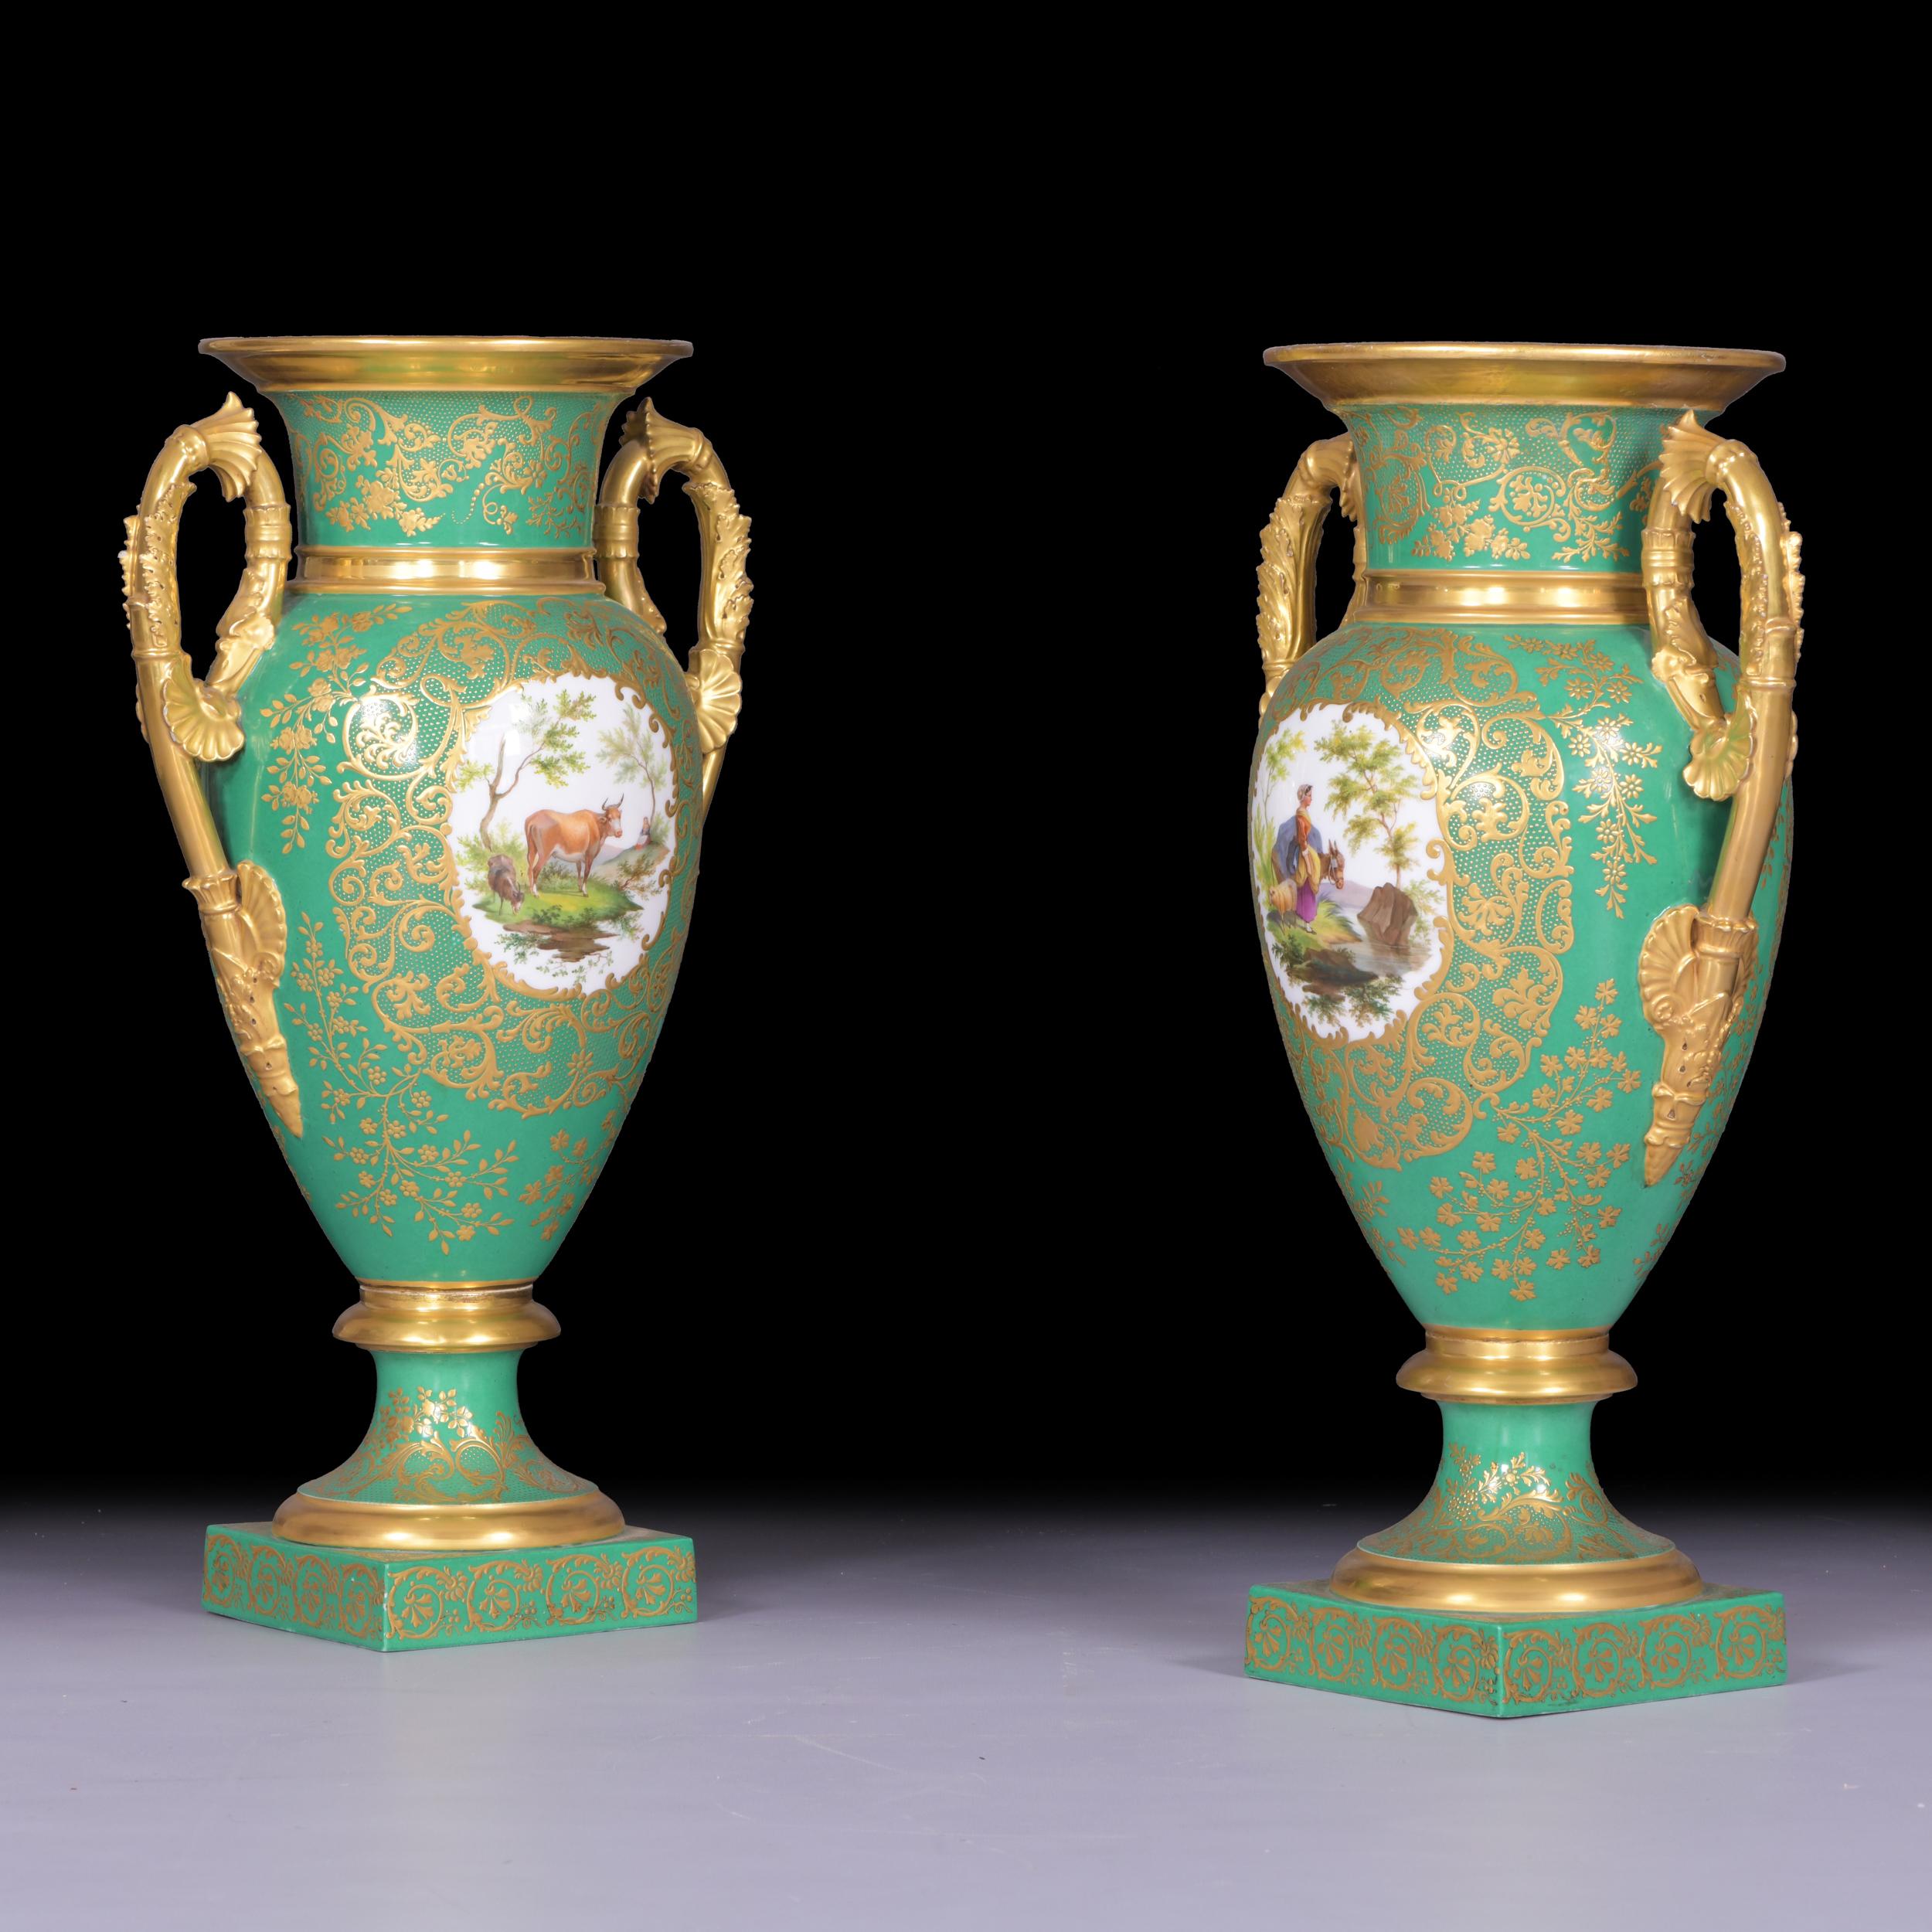 Une belle paire de vases anciens en porcelaine, datant du début du 19e siècle de la période Empire, reposant sur une base carrée et un socle étalé, l'avant du corps du vase est peint d'une scène idéalisée. La scène pastorale idyllique montre une